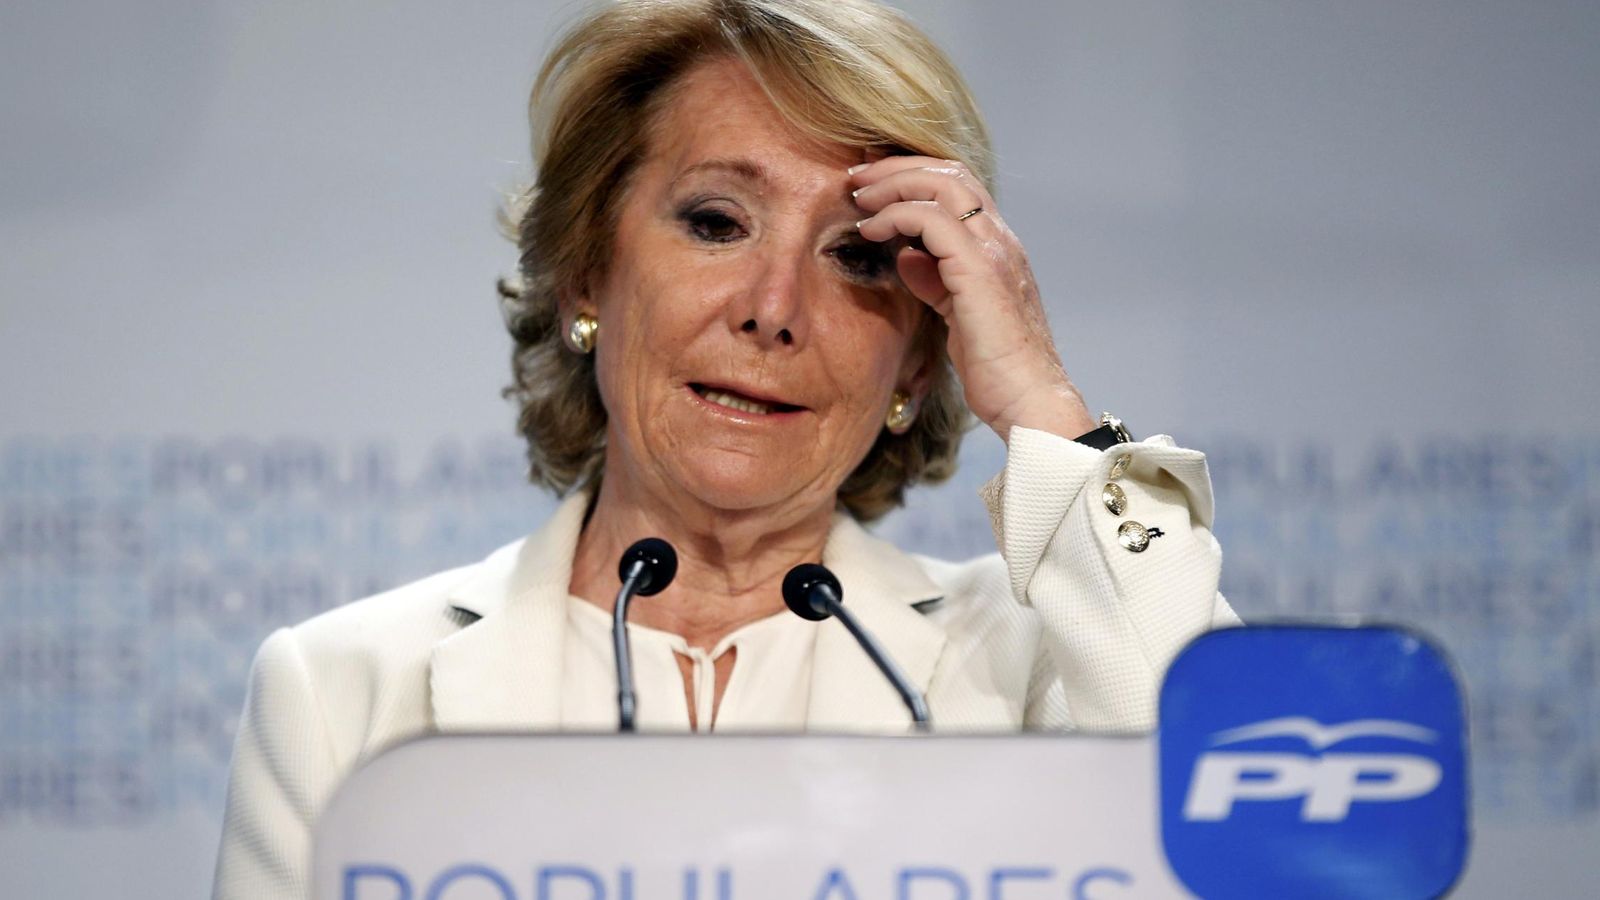 Foto: La presidenta del Partido Popular en la Comunidad de Madrid, Esperanza Aguirre. (Reuters)